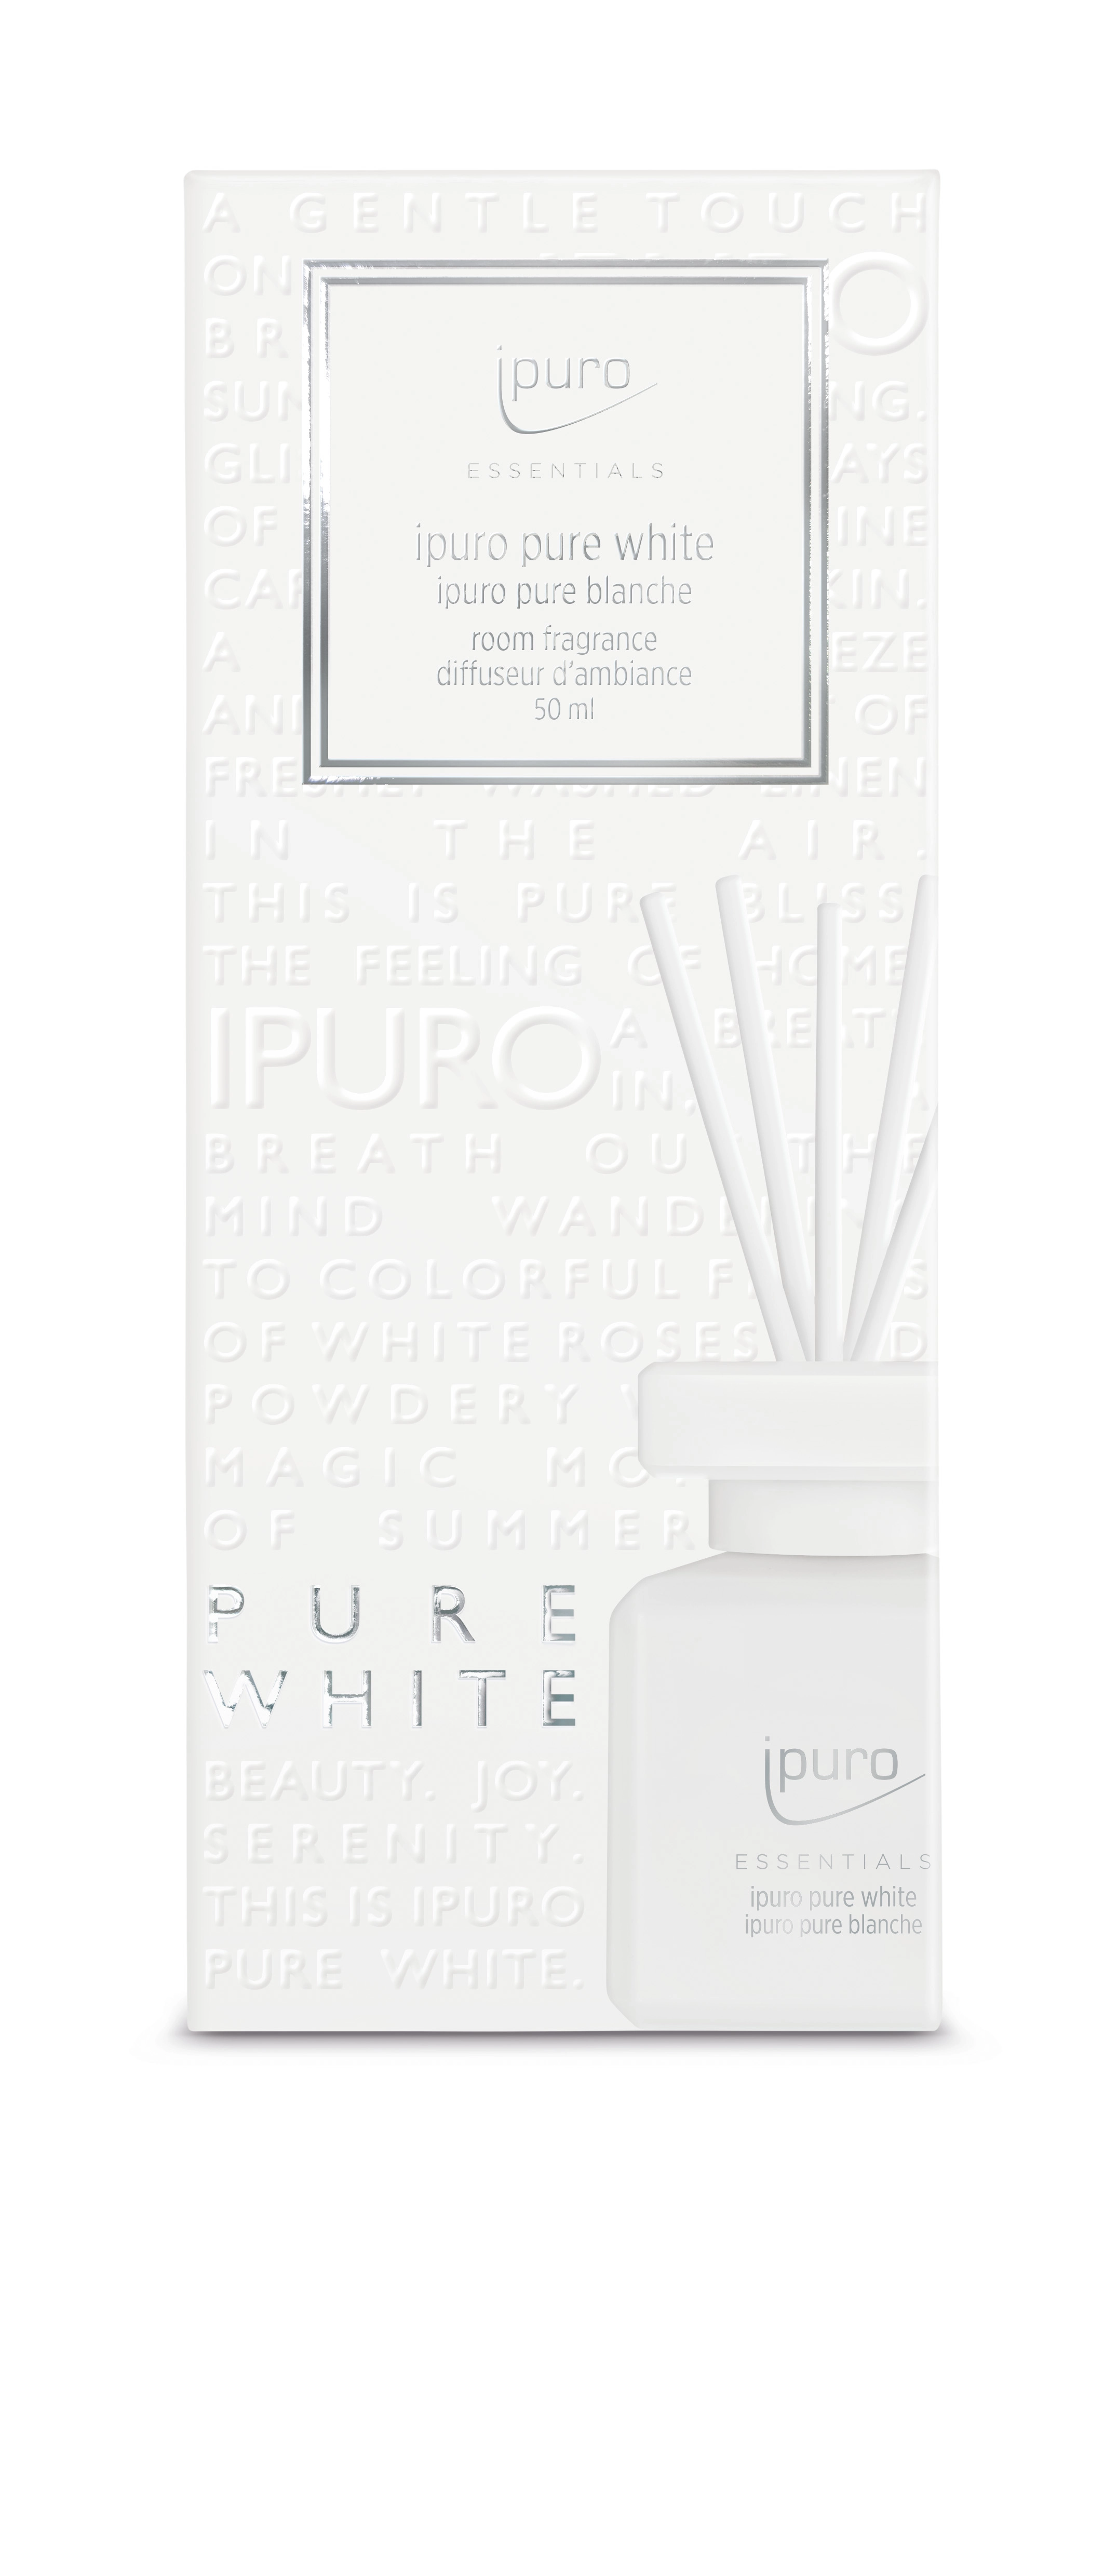 iPuro Pure White Essentials (50ml) ab 5,49 €